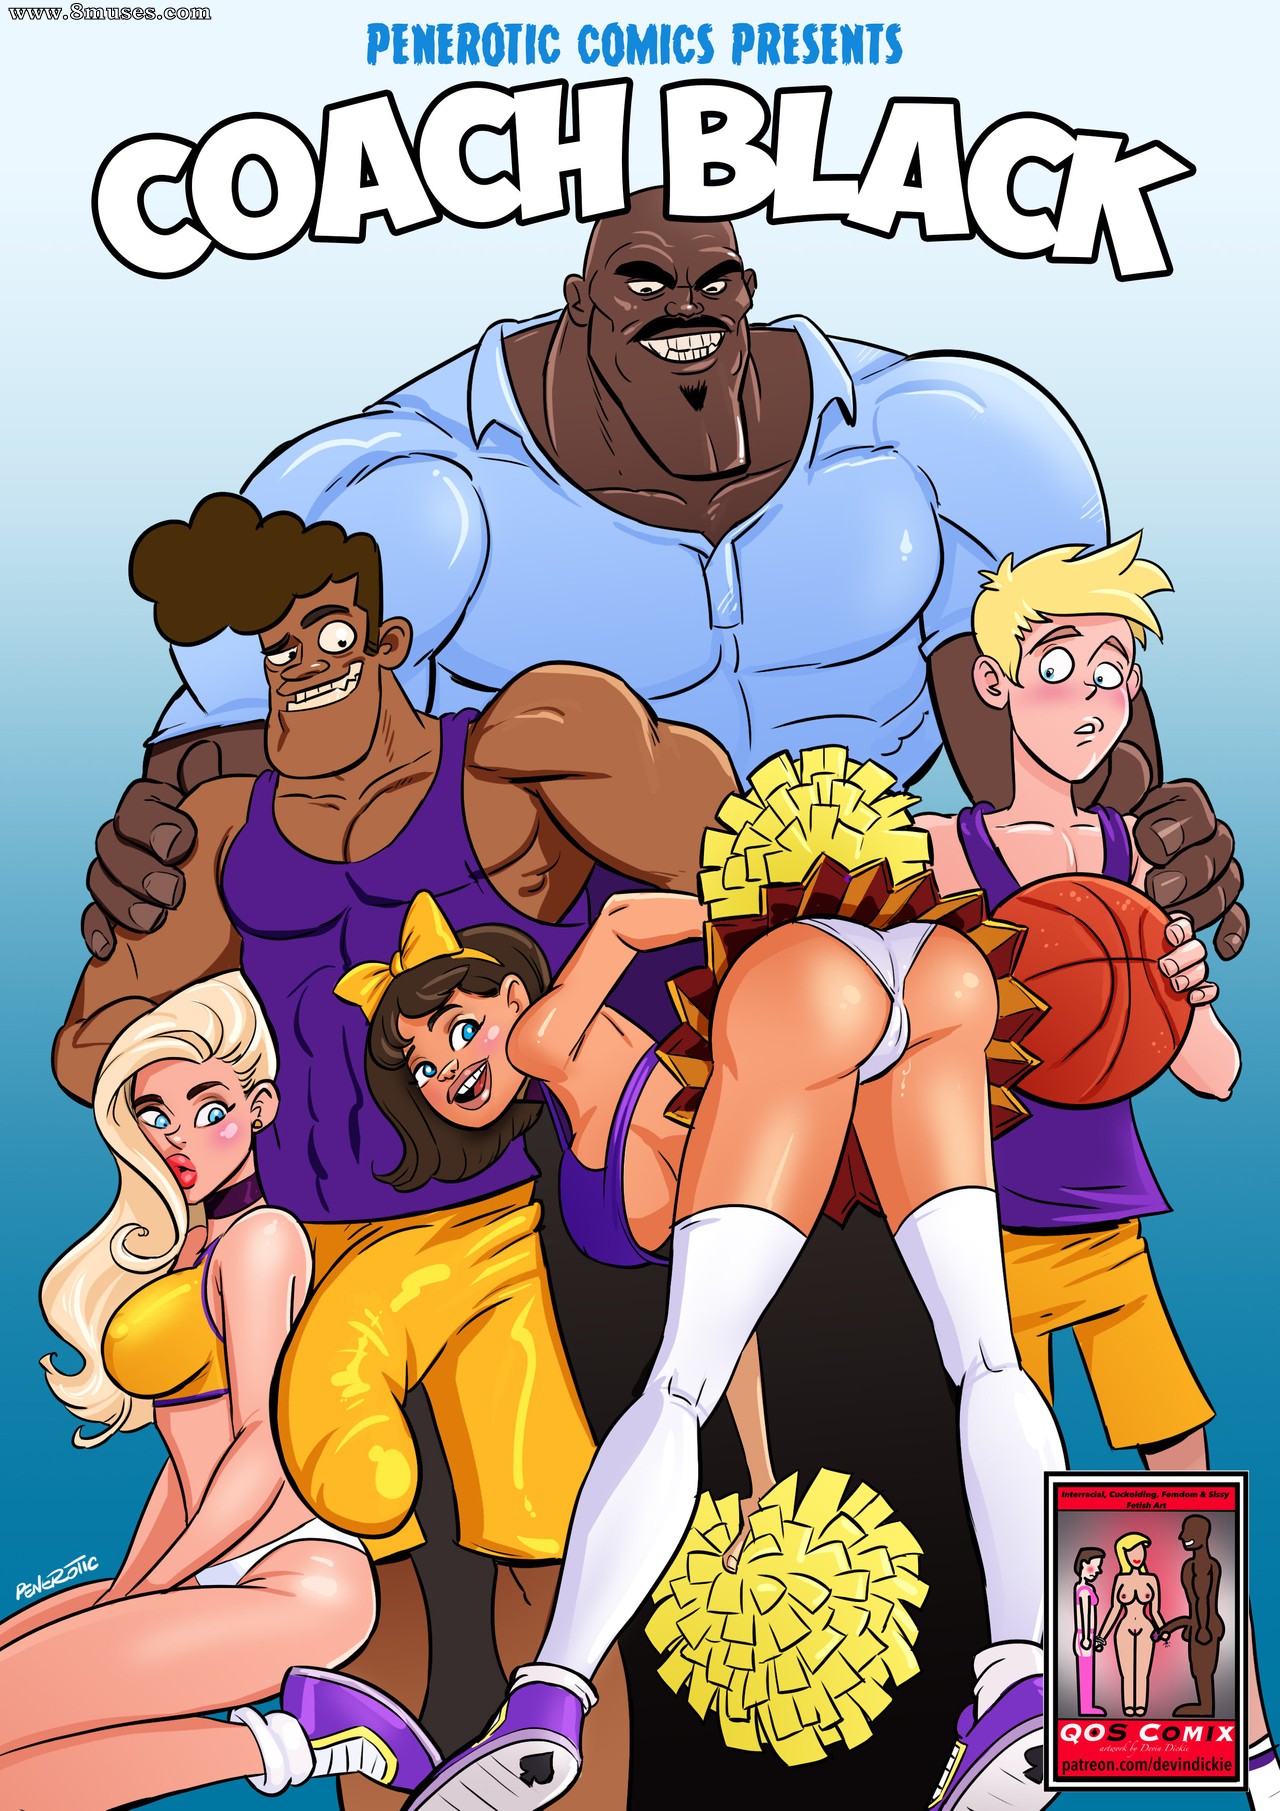 Black Xxx Cartoons - Coach Black Issue 1 - 8muses Comics - Sex Comics and Porn Cartoons